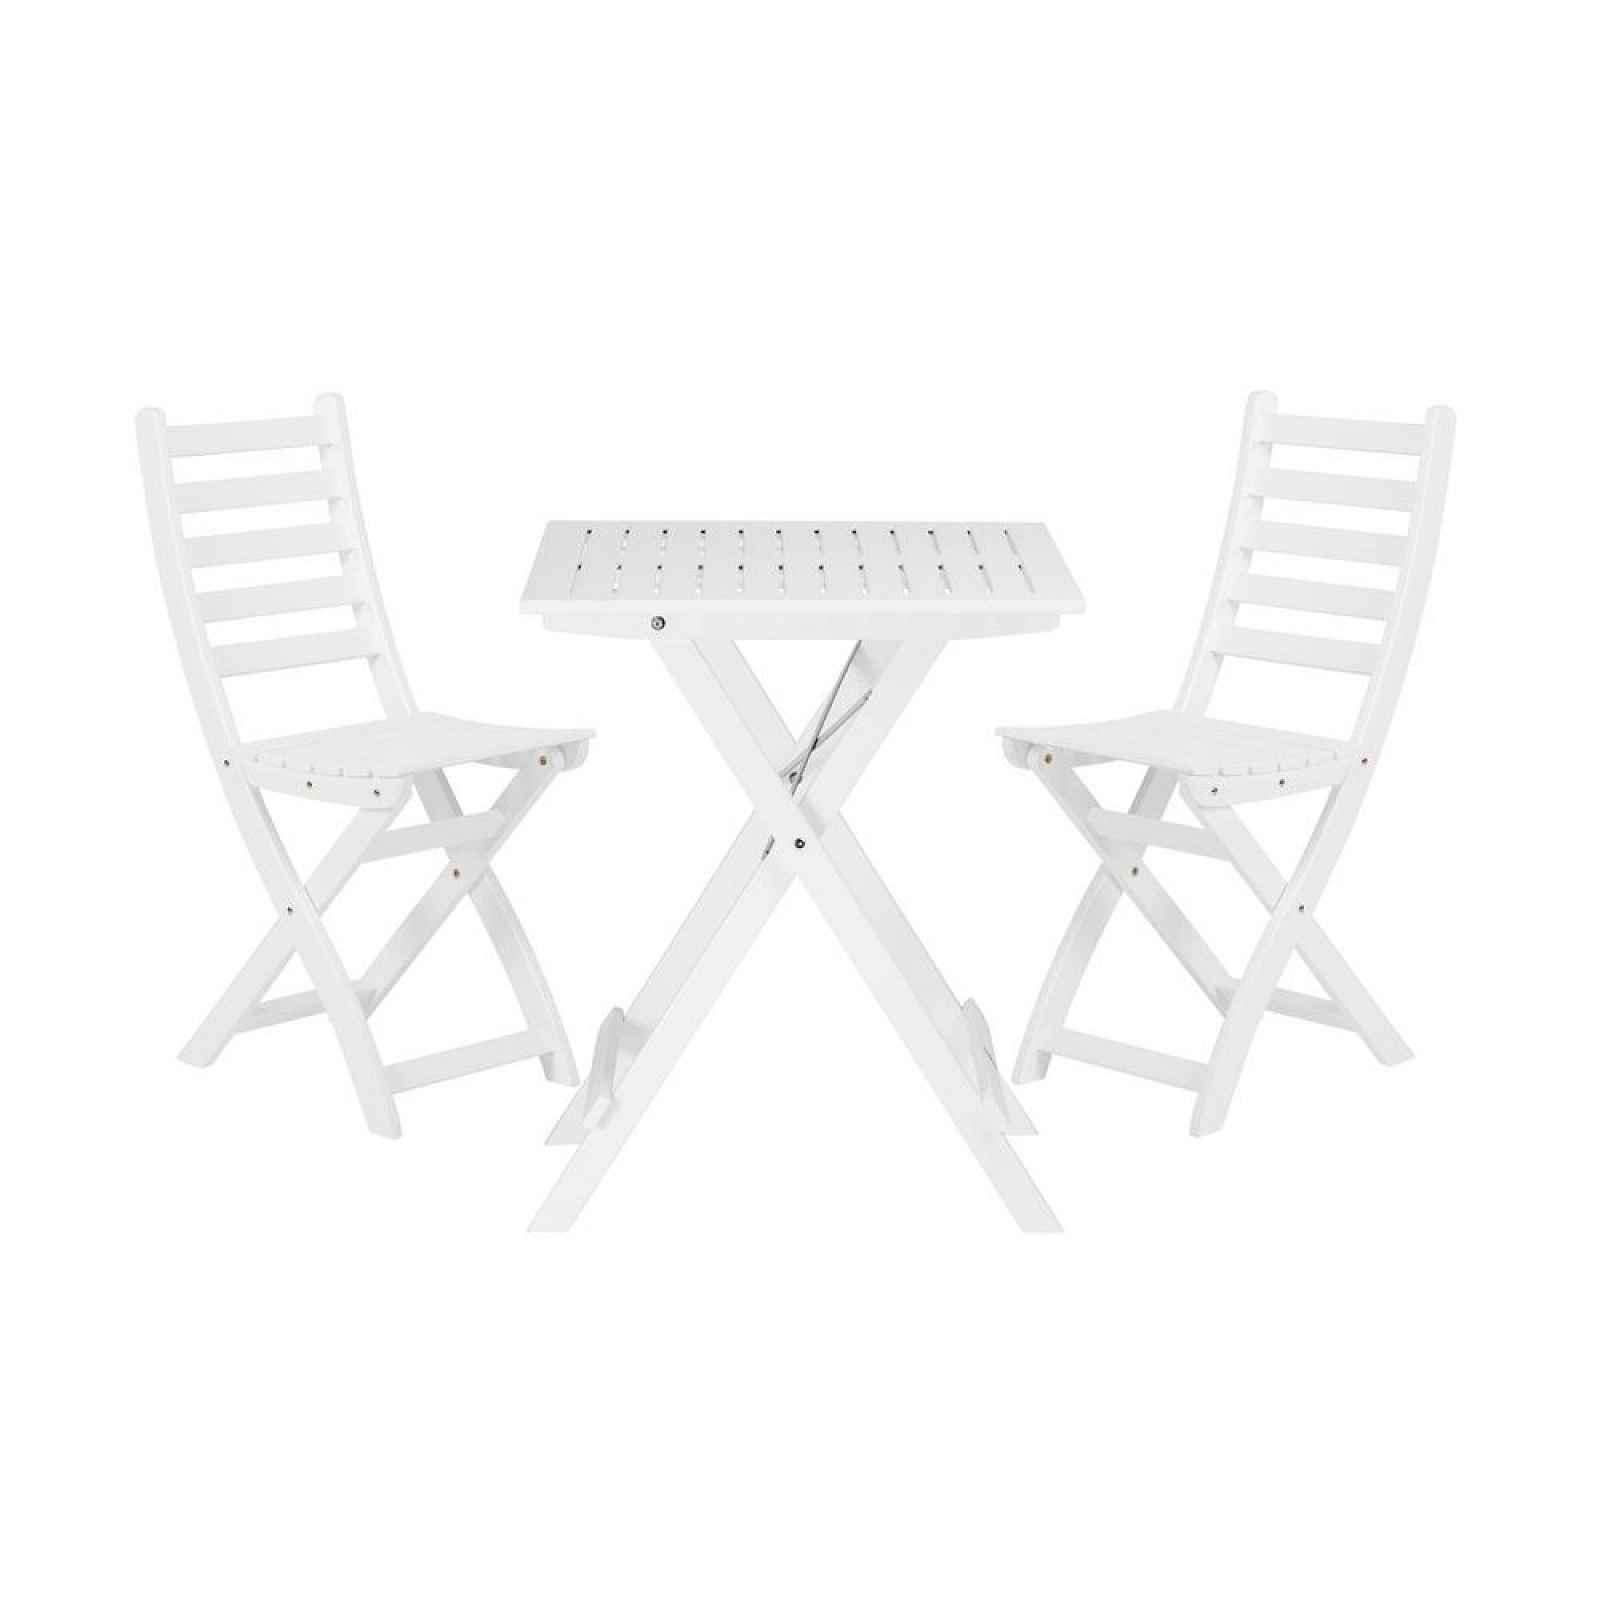 LODGE Set zahradního nábytku 2 ks židle a 1 ks stůl - bílá